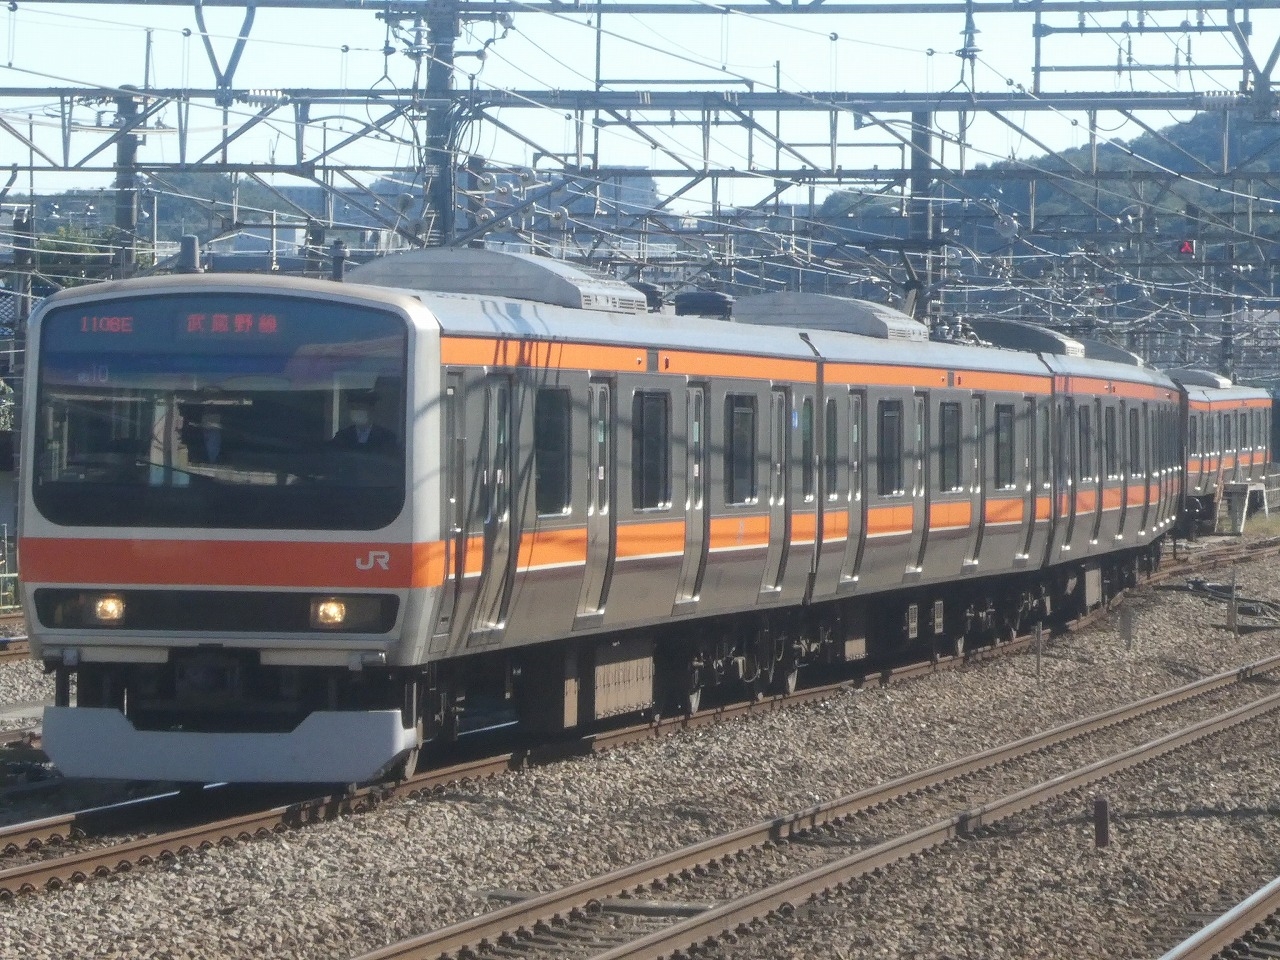 武蔵野線